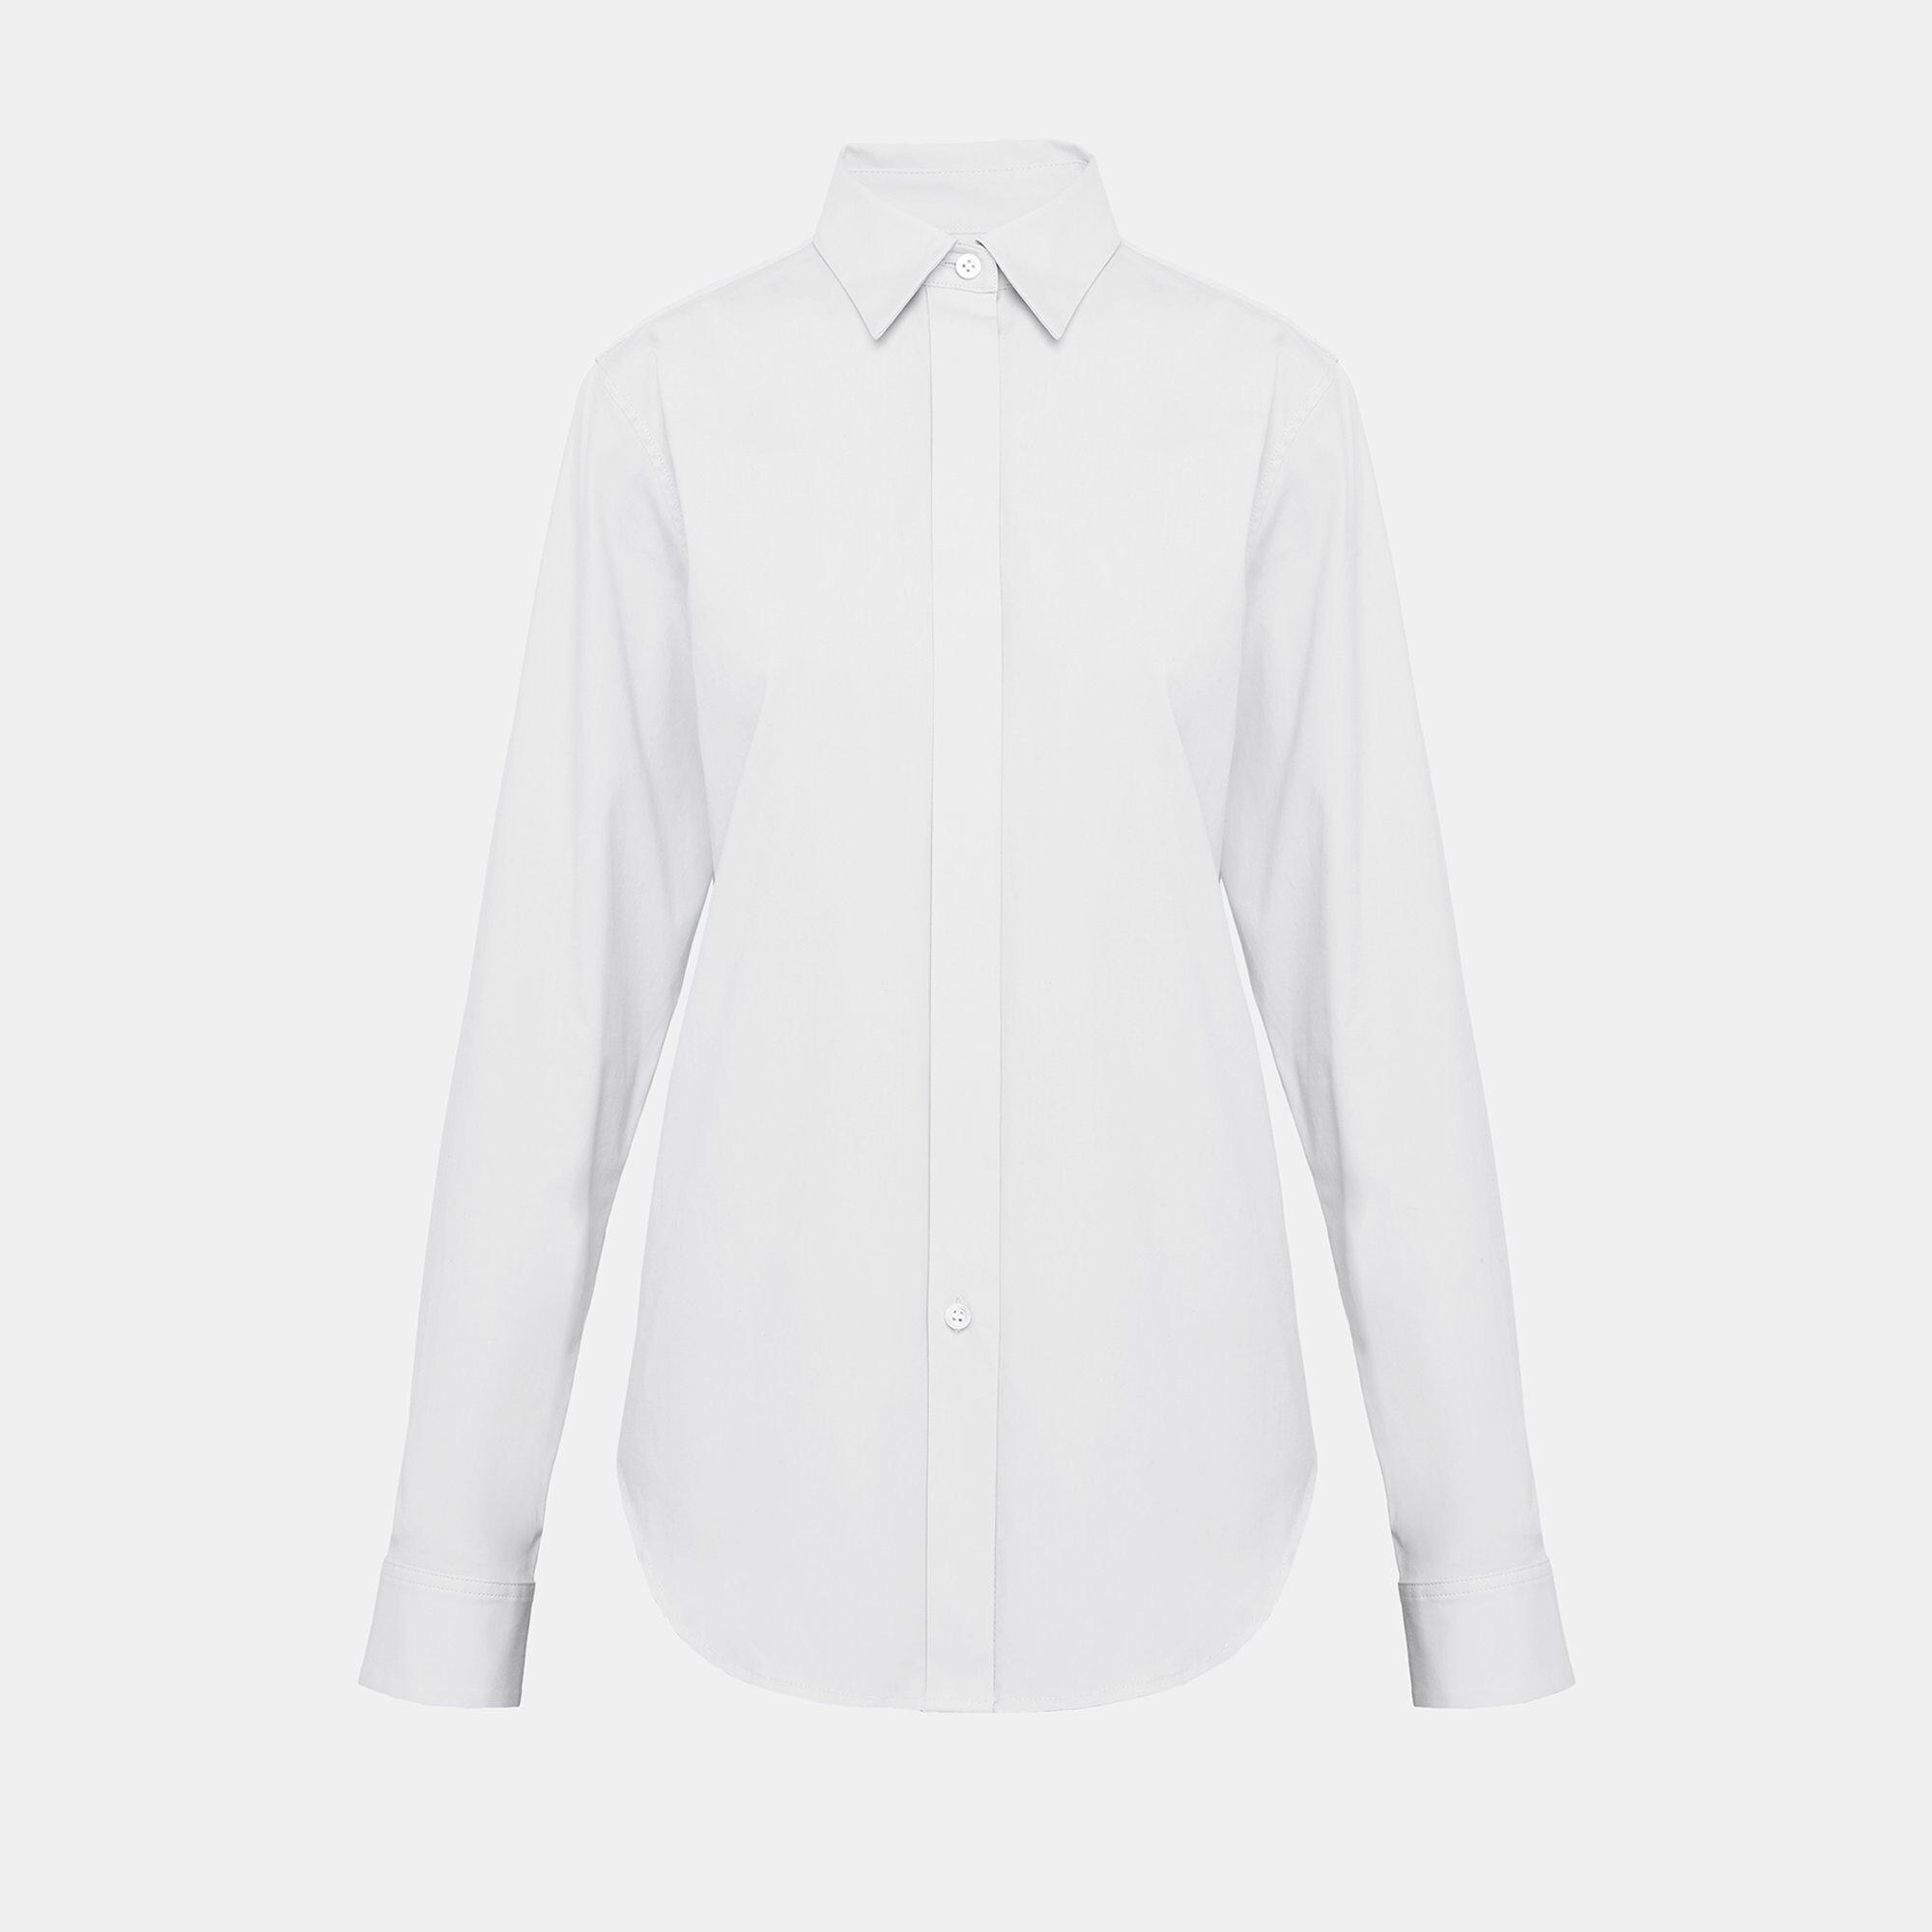 Harriton Womens Essential Long Sleeve Button Down Shirt - White